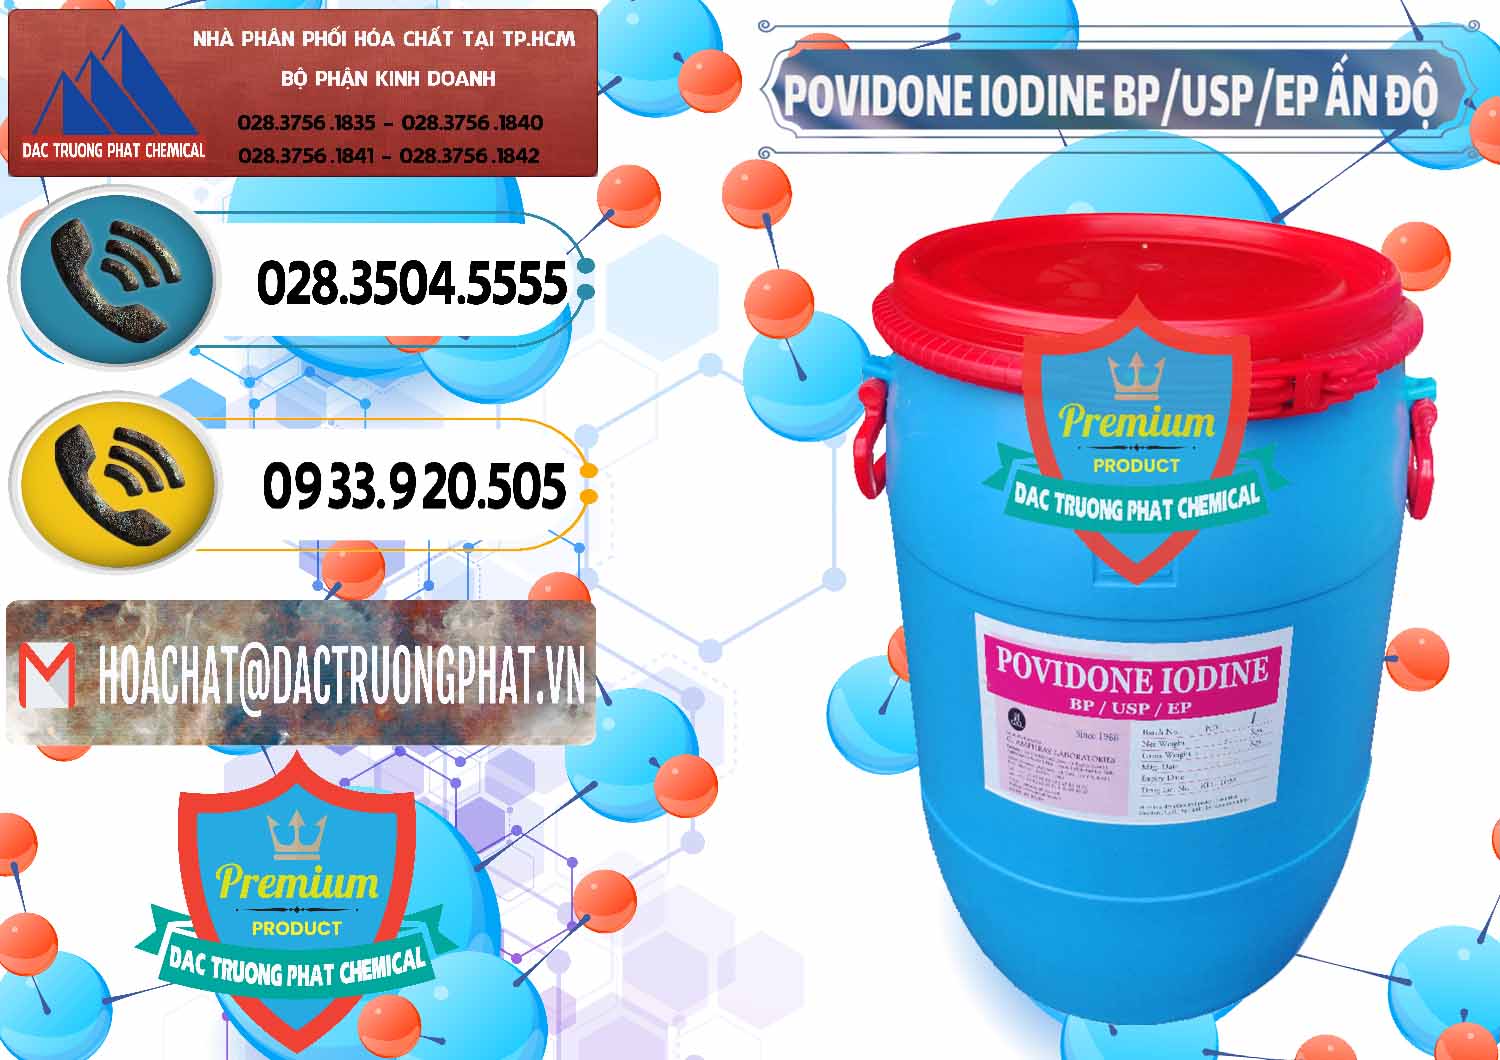 Công ty bán _ phân phối Povidone Iodine BP USP EP Ấn Độ India - 0318 - Đơn vị kinh doanh ( phân phối ) hóa chất tại TP.HCM - hoachatdetnhuom.vn